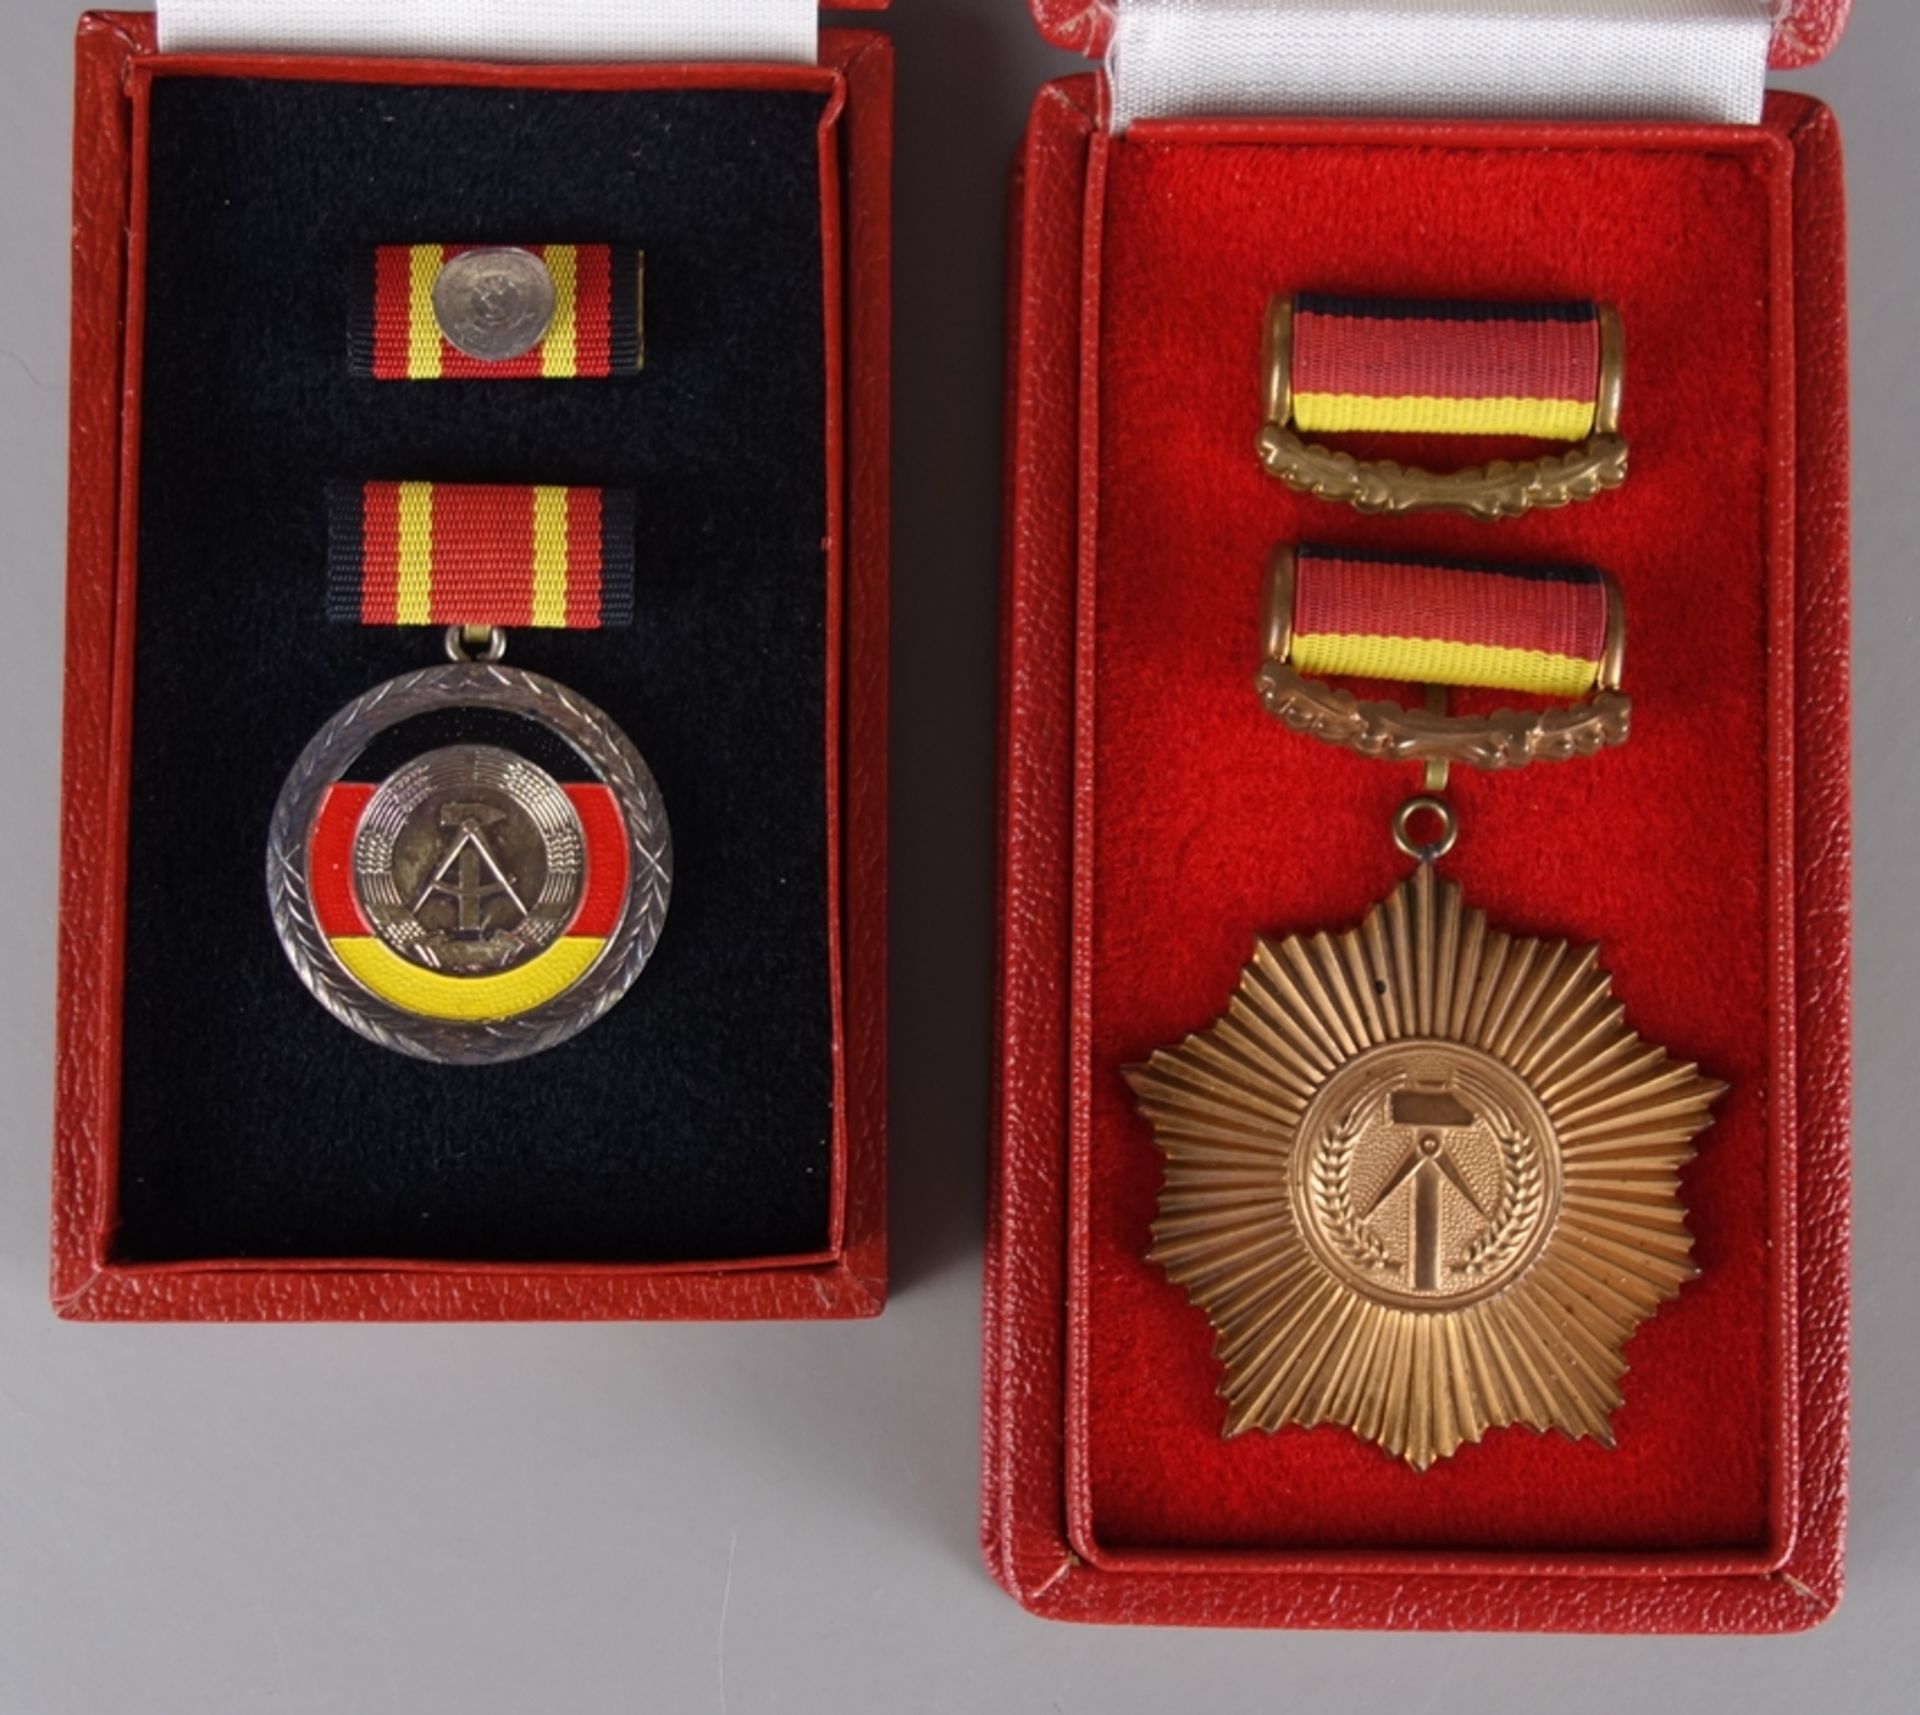 Vaterländischer Verdienstorden in Bronze und Verdienstmedaille der DDR, mit Urk